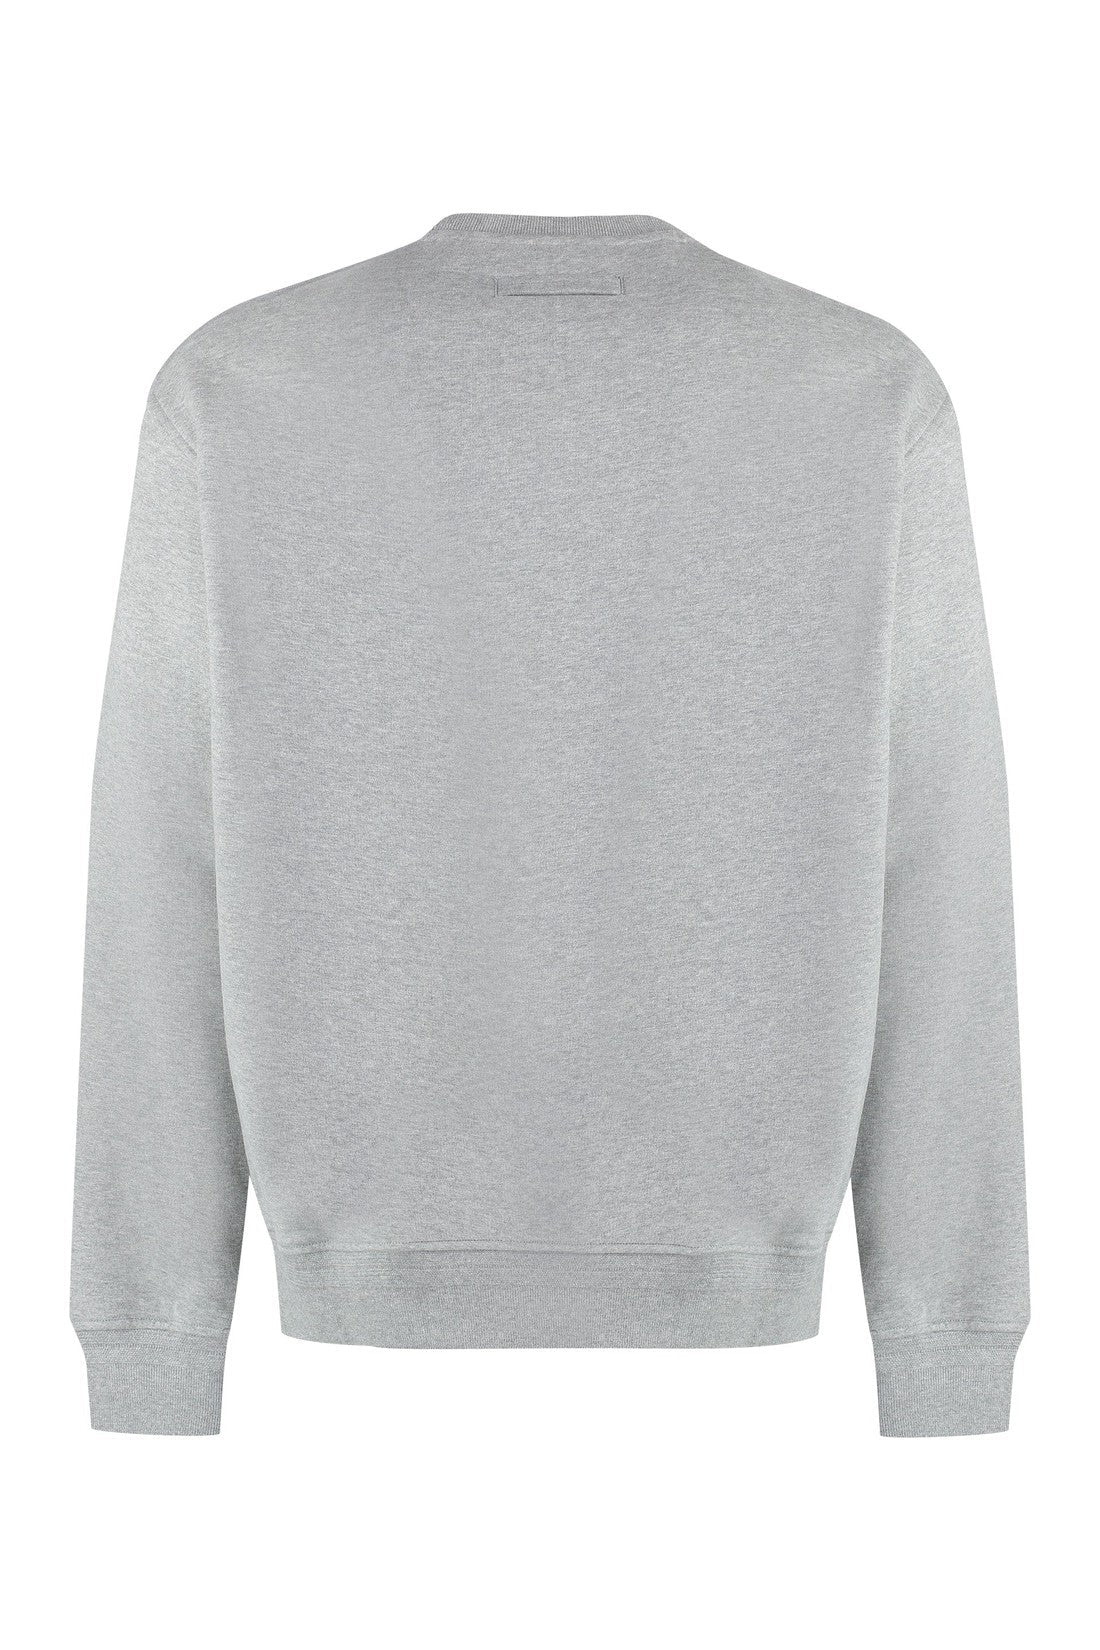 Zegna-OUTLET-SALE-Cotton crew-neck sweatshirt-ARCHIVIST